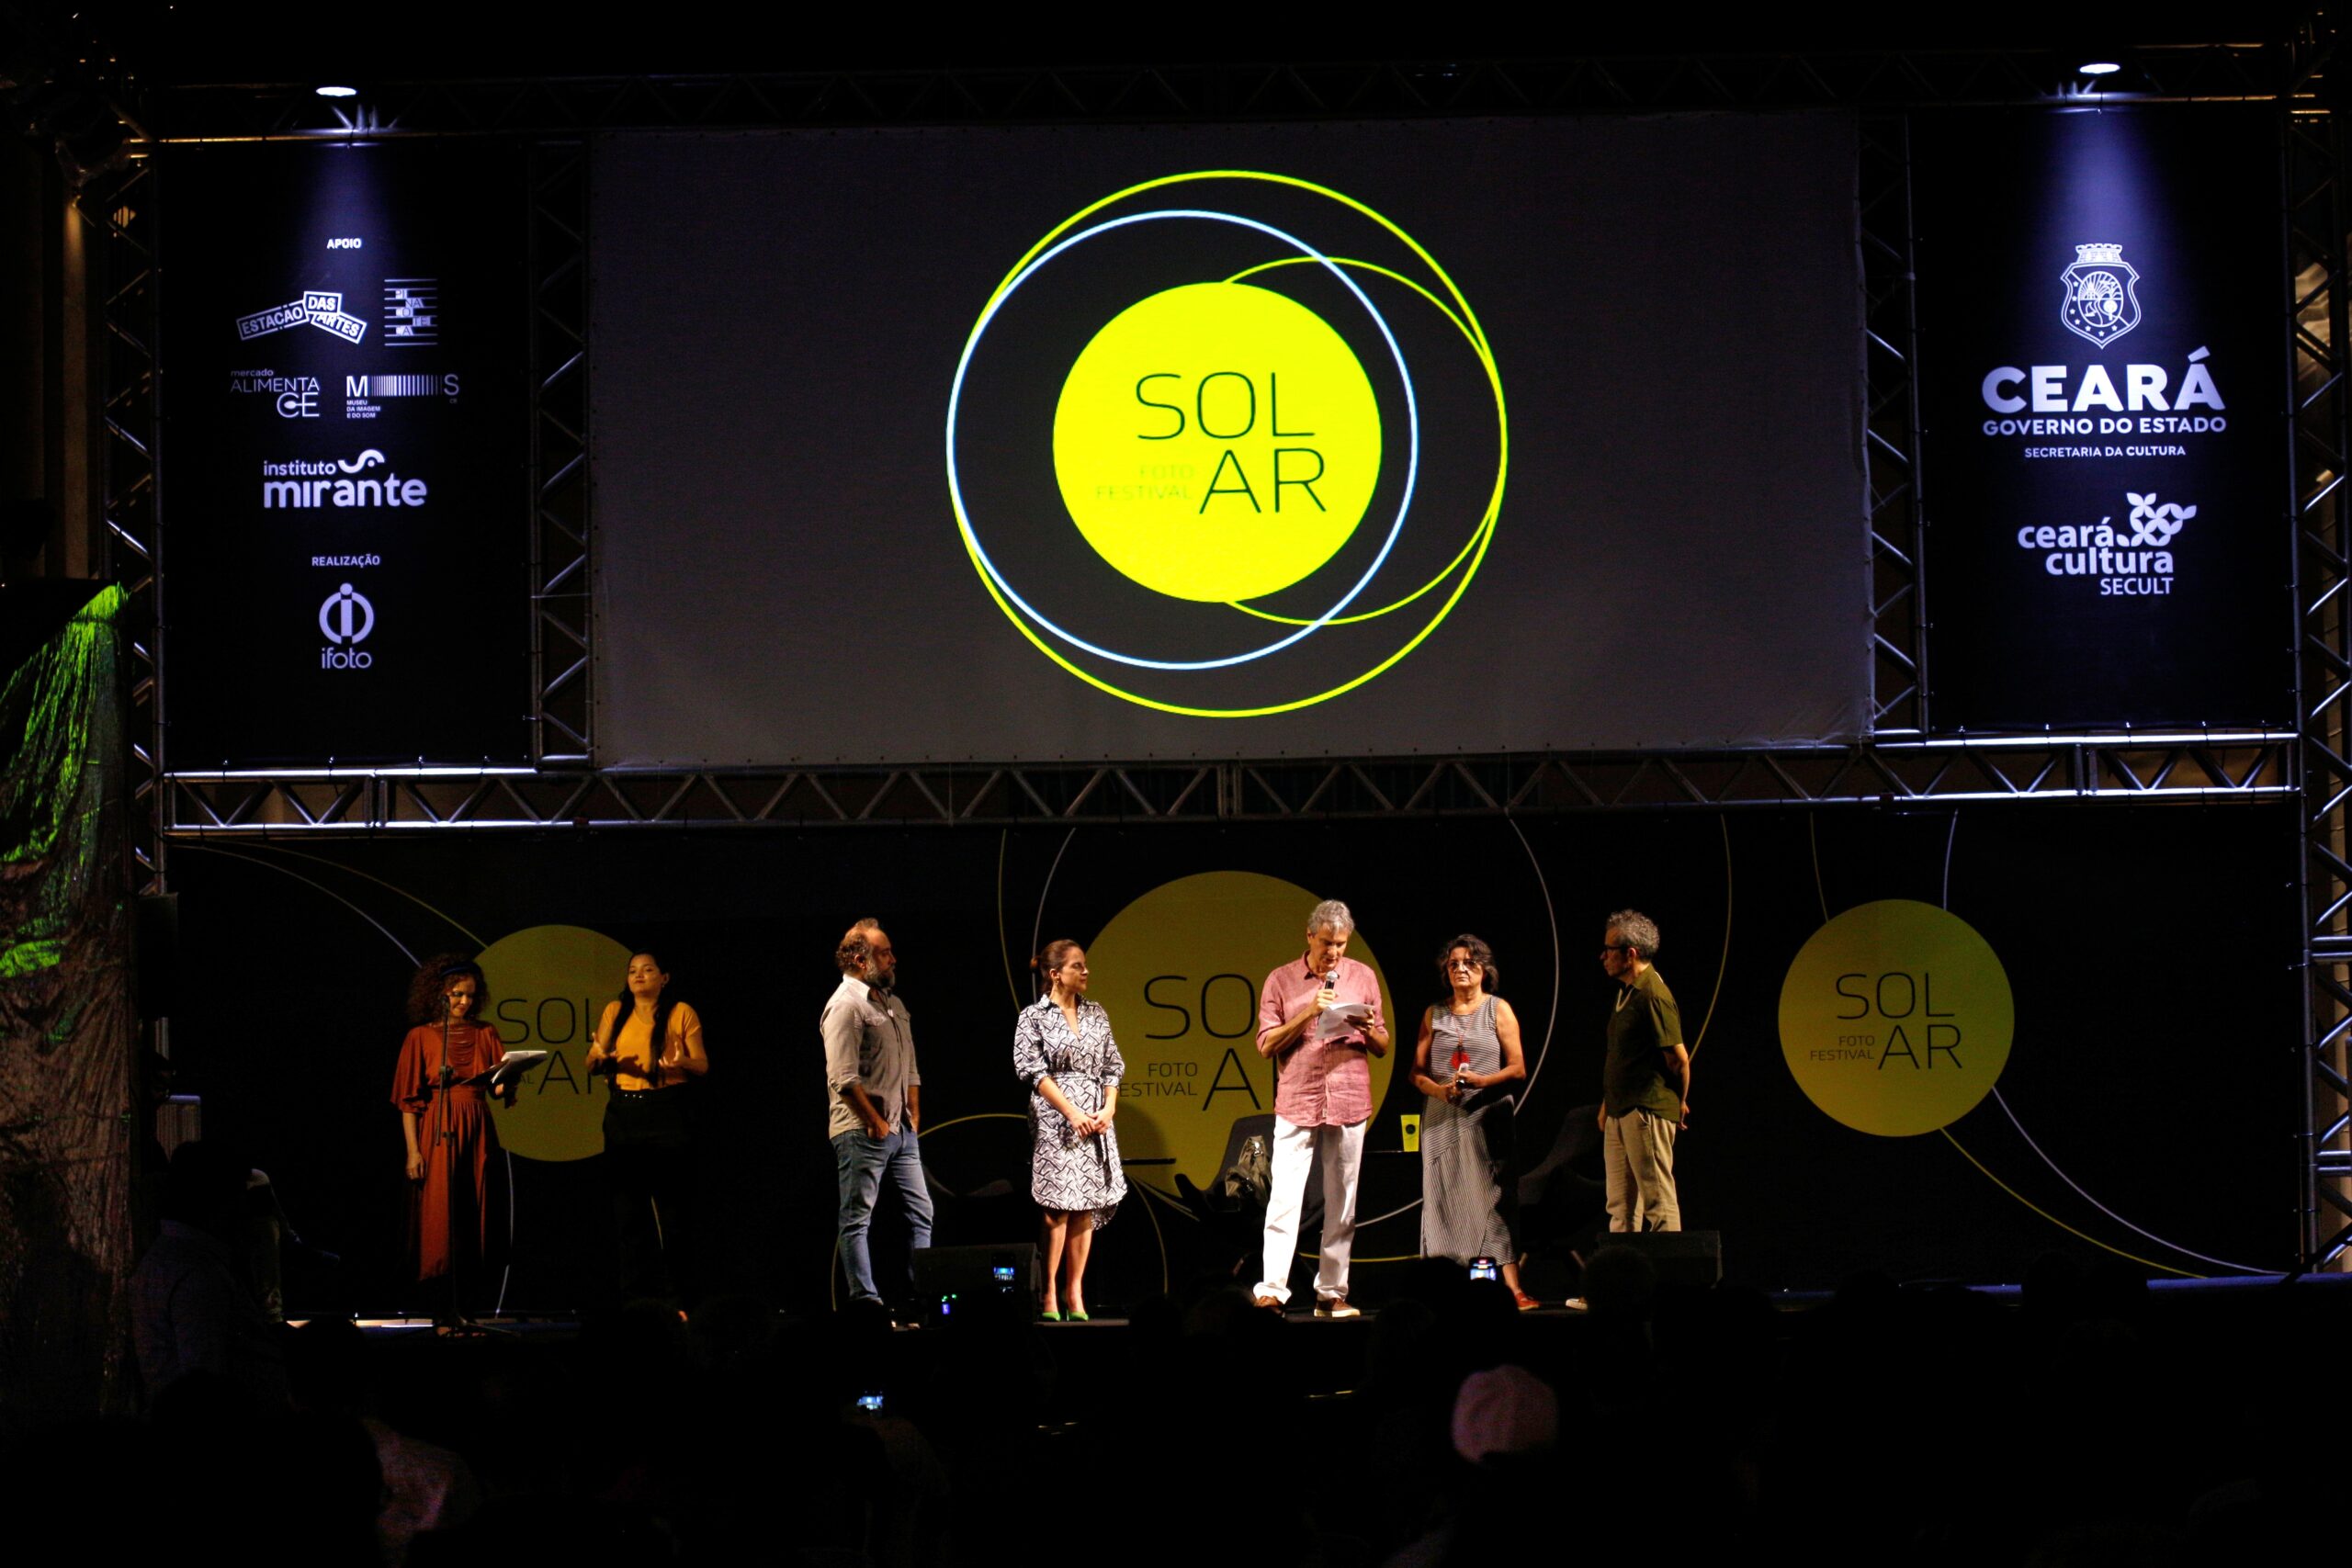 Ifoto realiza segunda edição do FotoFestival Solar